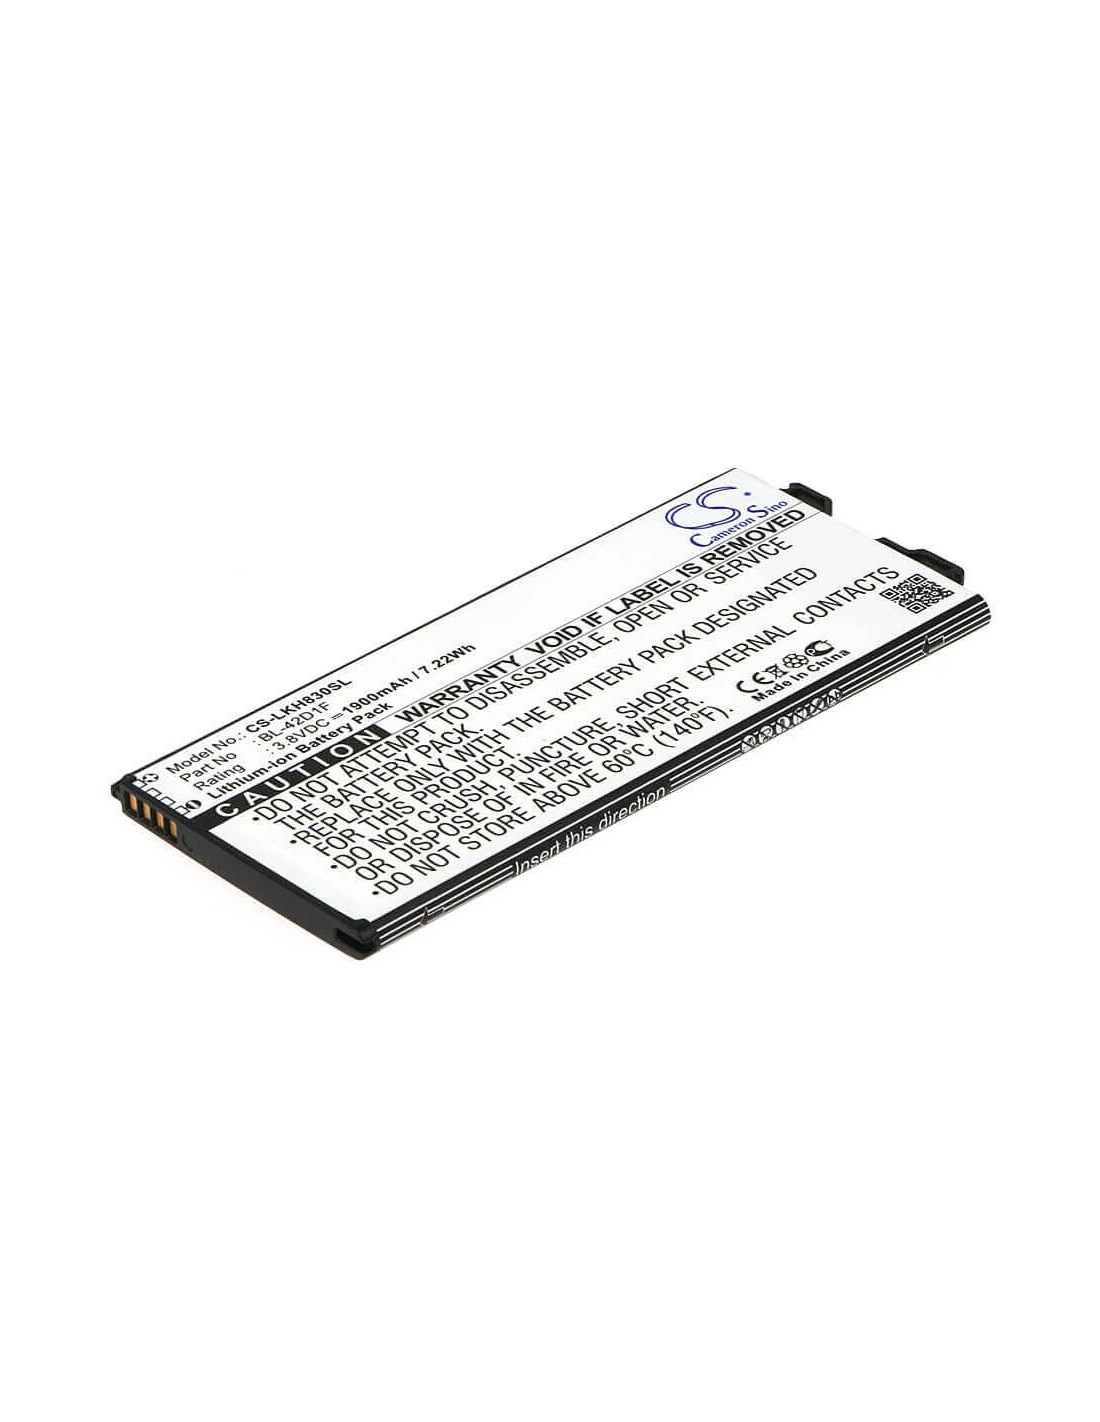 Battery for LG G5, H830, G5 Lite 3.8V, 1900mAh - 7.22Wh